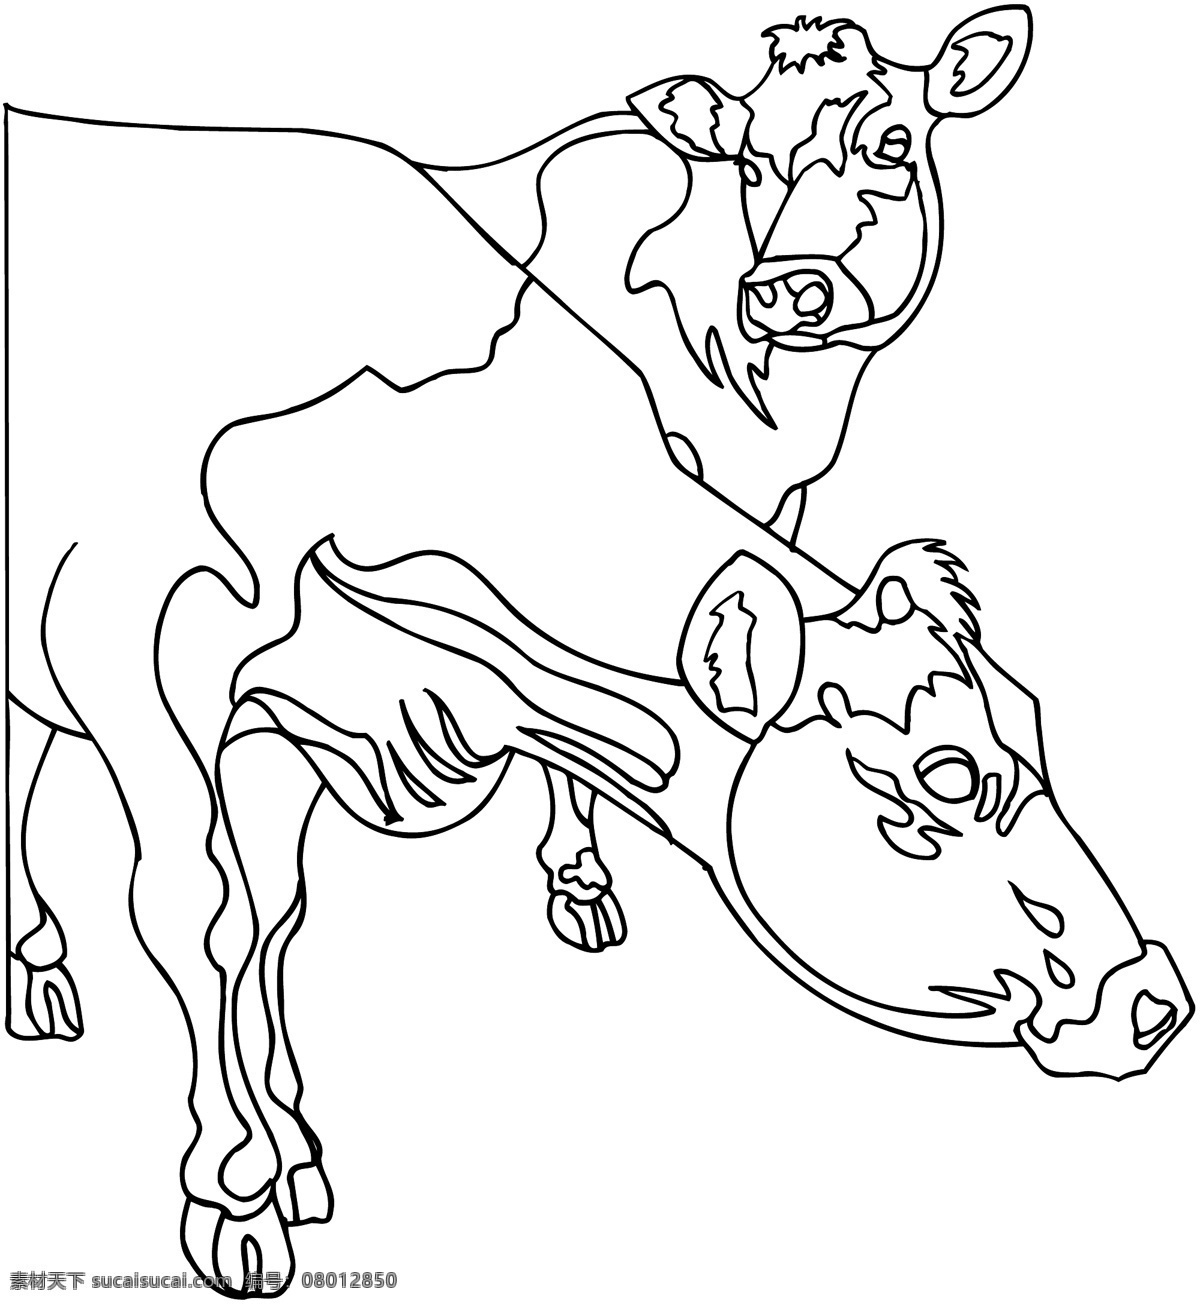 牛 家禽家畜 矢量素材 格式 eps格式 设计素材 矢量动物 矢量图库 白色